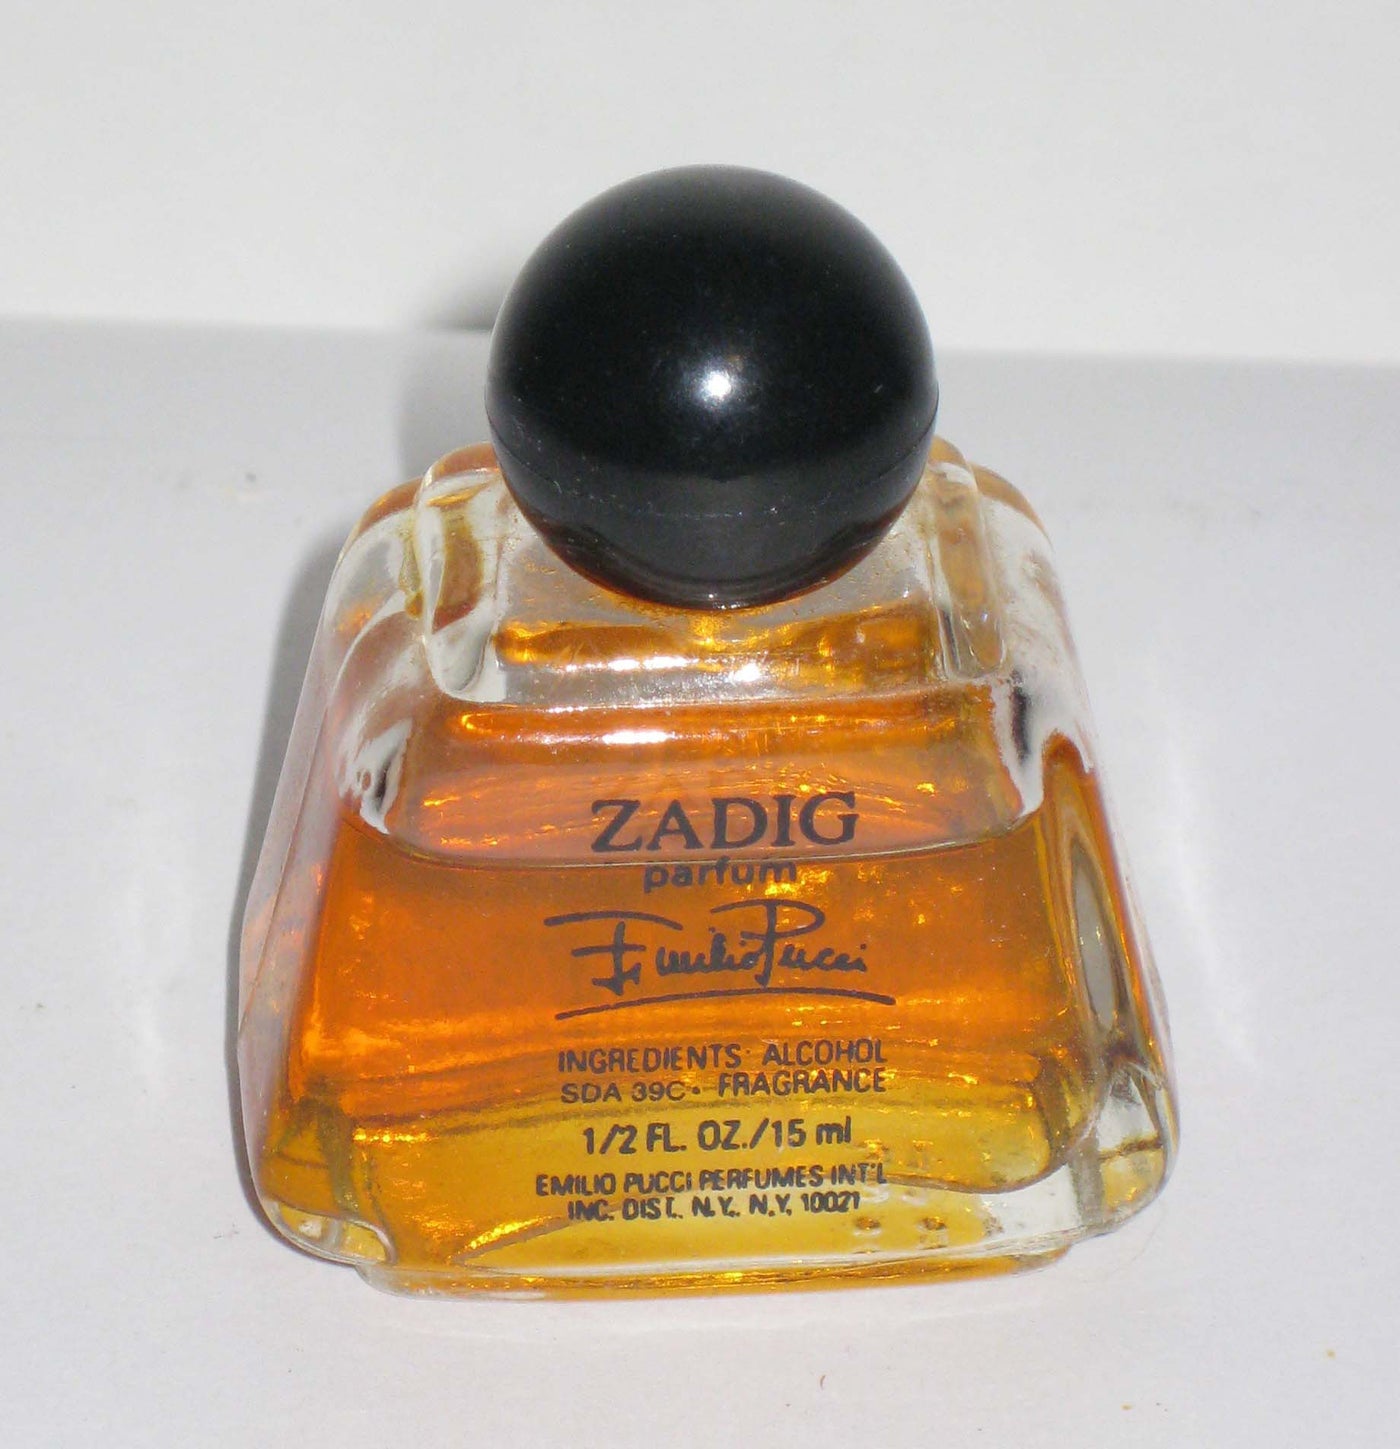 Emilio Pucci Zadig Parfum